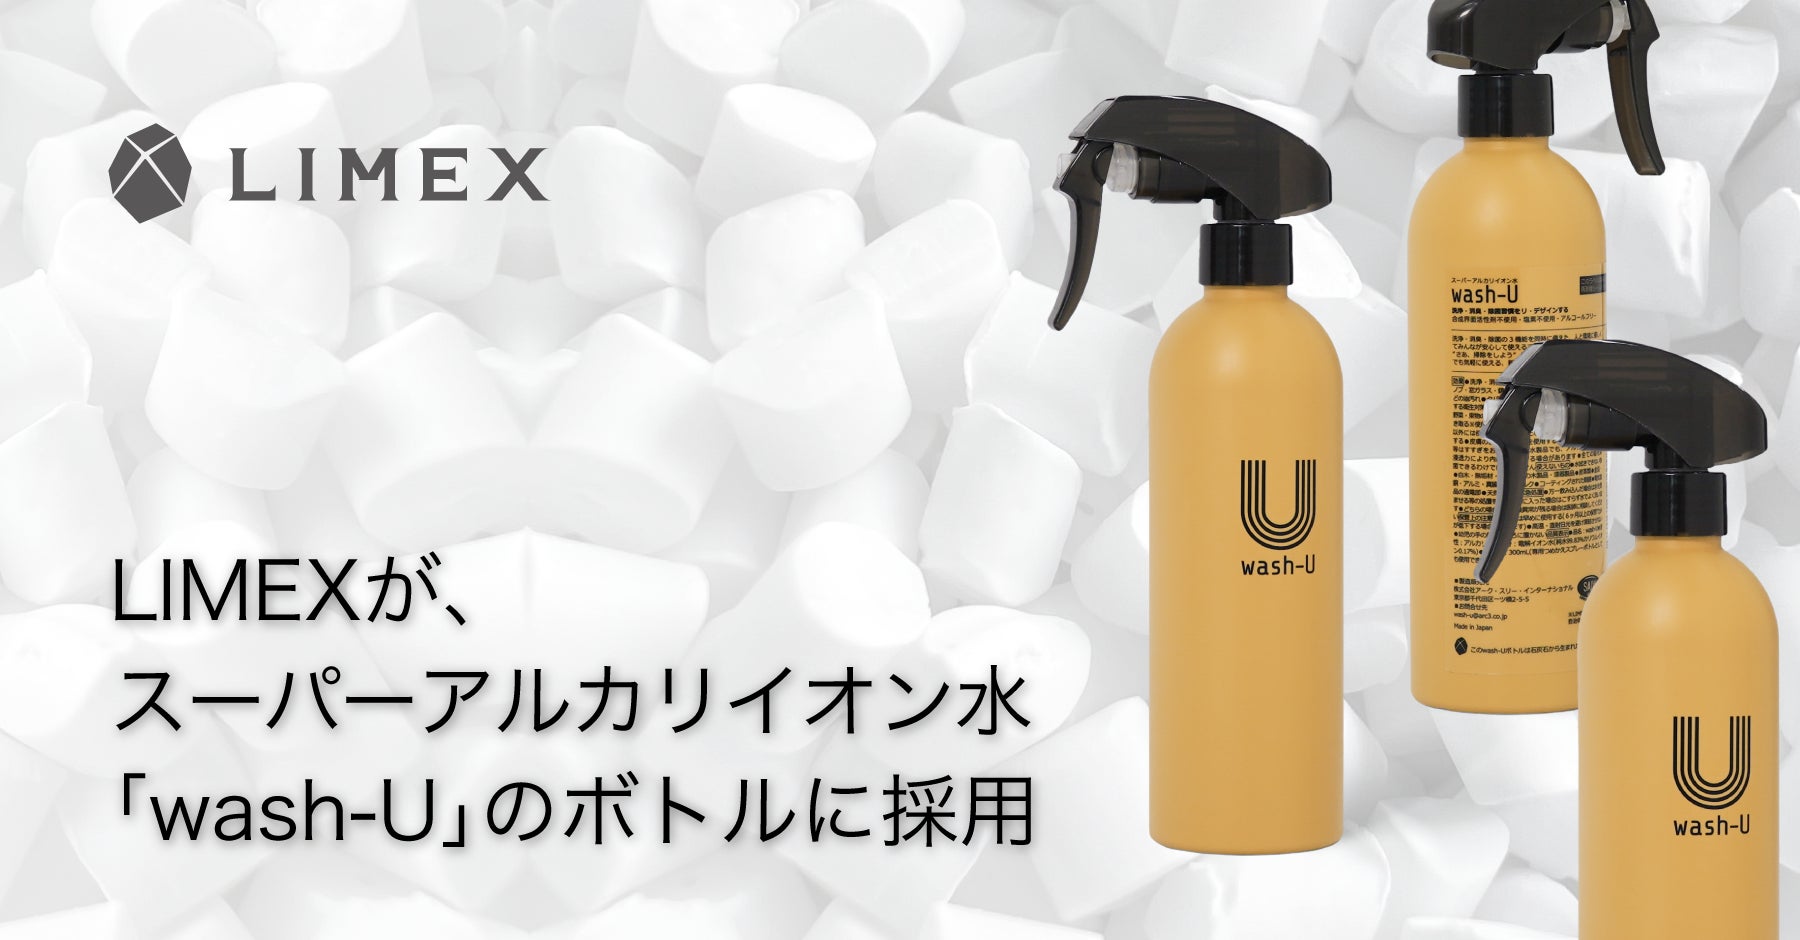 環境配慮型素材の「LIMEX Pellet」が、スーパーアルカリイオン水「wash-U」シリーズのボトル容器に採用